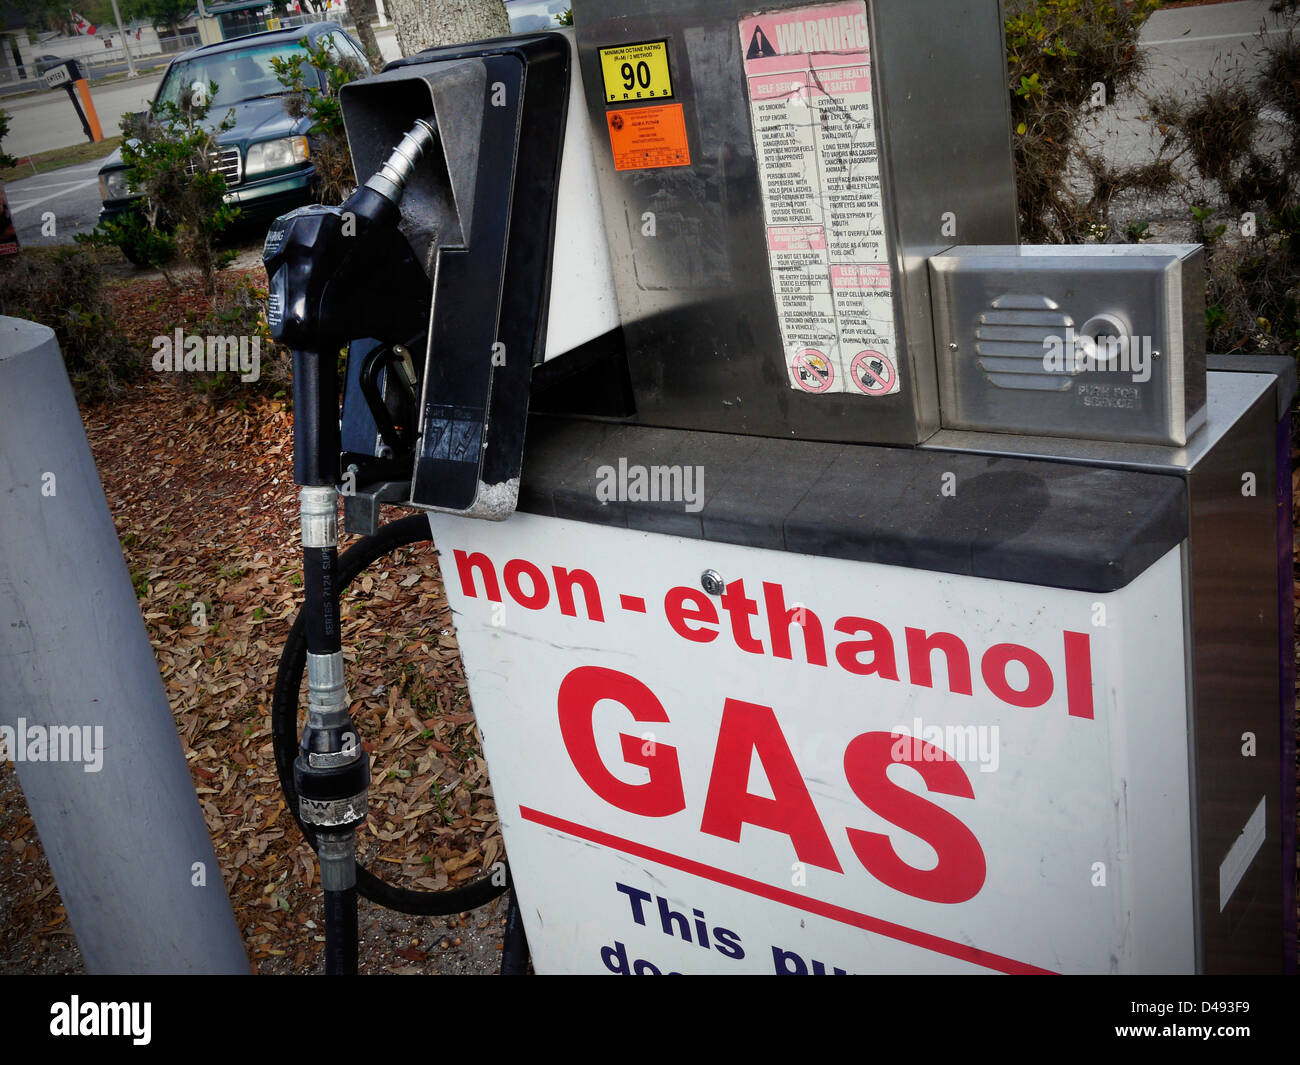 Certains moteurs ne sont pas bien à l'éthanol, certaines stations offrent un pur tous les gaz de pétrole, comme celui-ci en Floride Banque D'Images